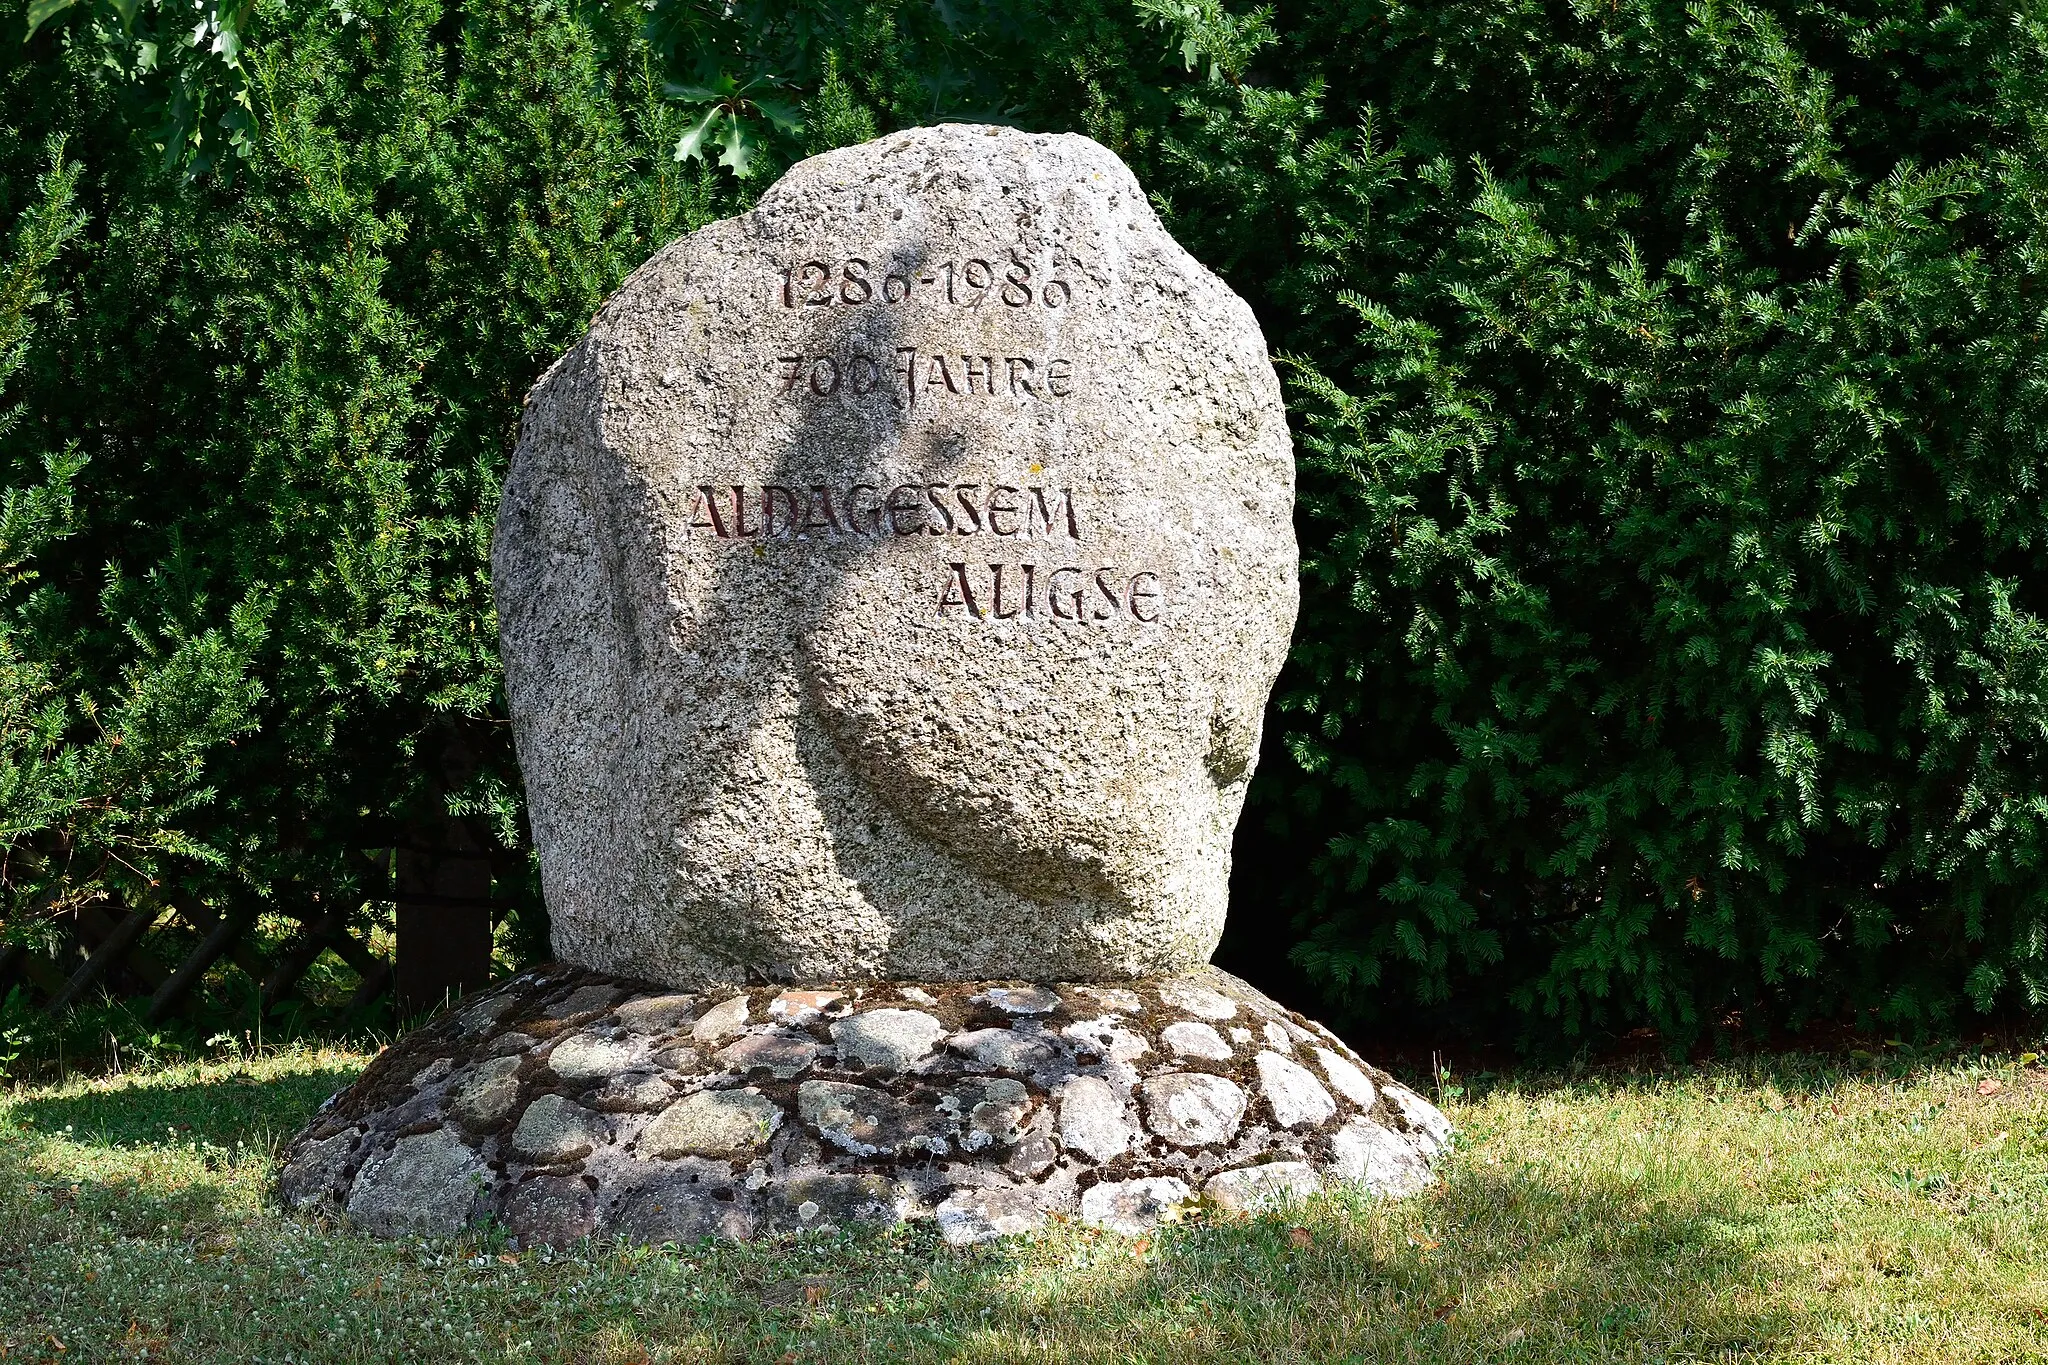 Photo showing: Gedenkstein 1280-1980 700 Jahre Aldagessem Aligse